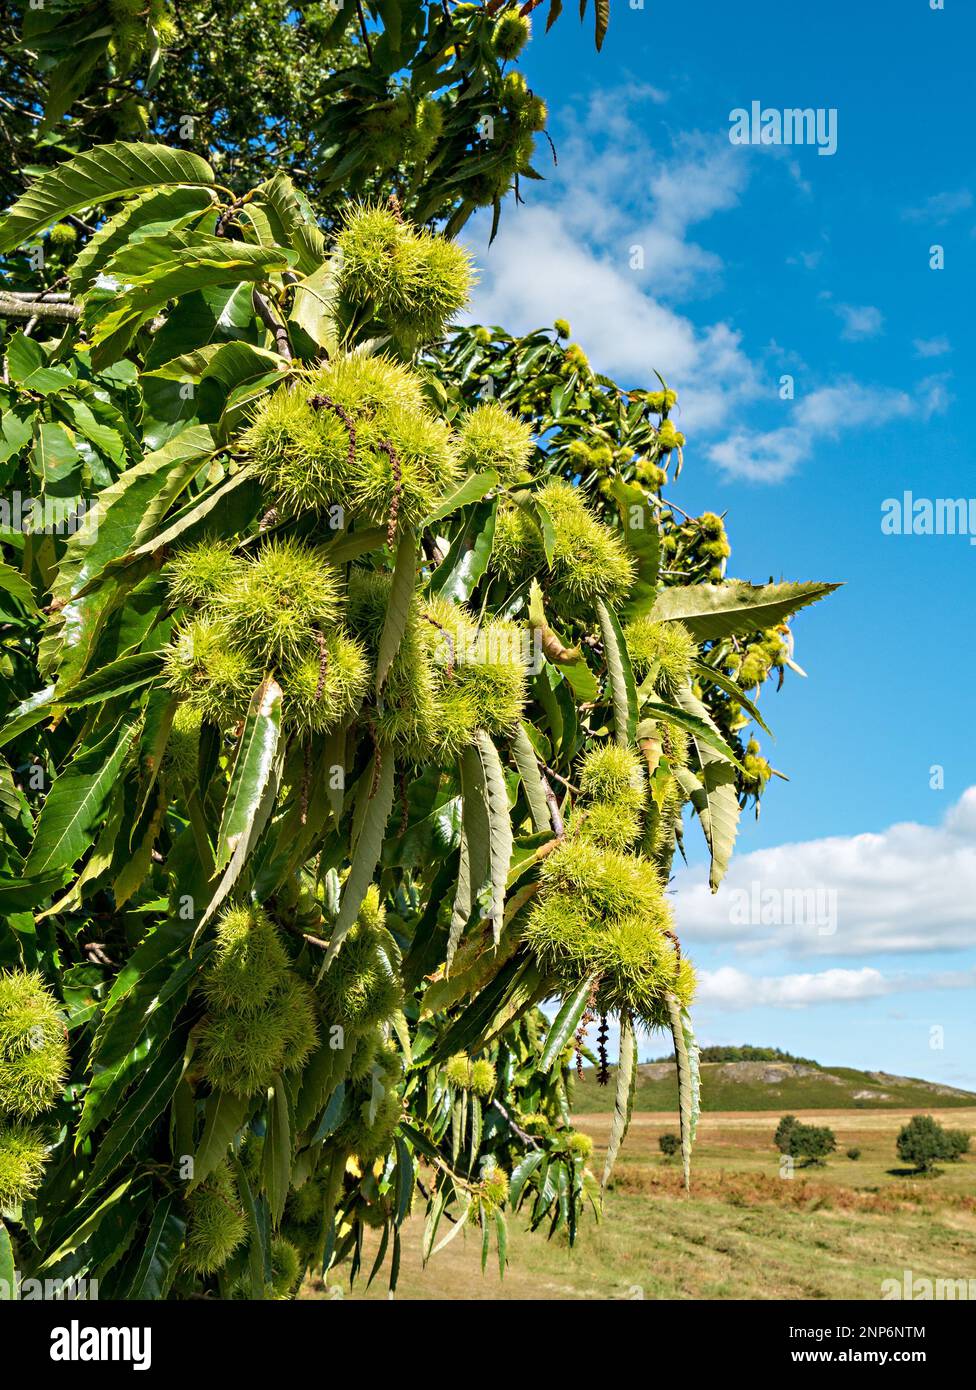 Castagno dolce (Castanea sativa) frutti che crescono su albero con foglie a settembre, Bradgate Park Leicestershire, Inghilterra, Regno Unito Foto Stock